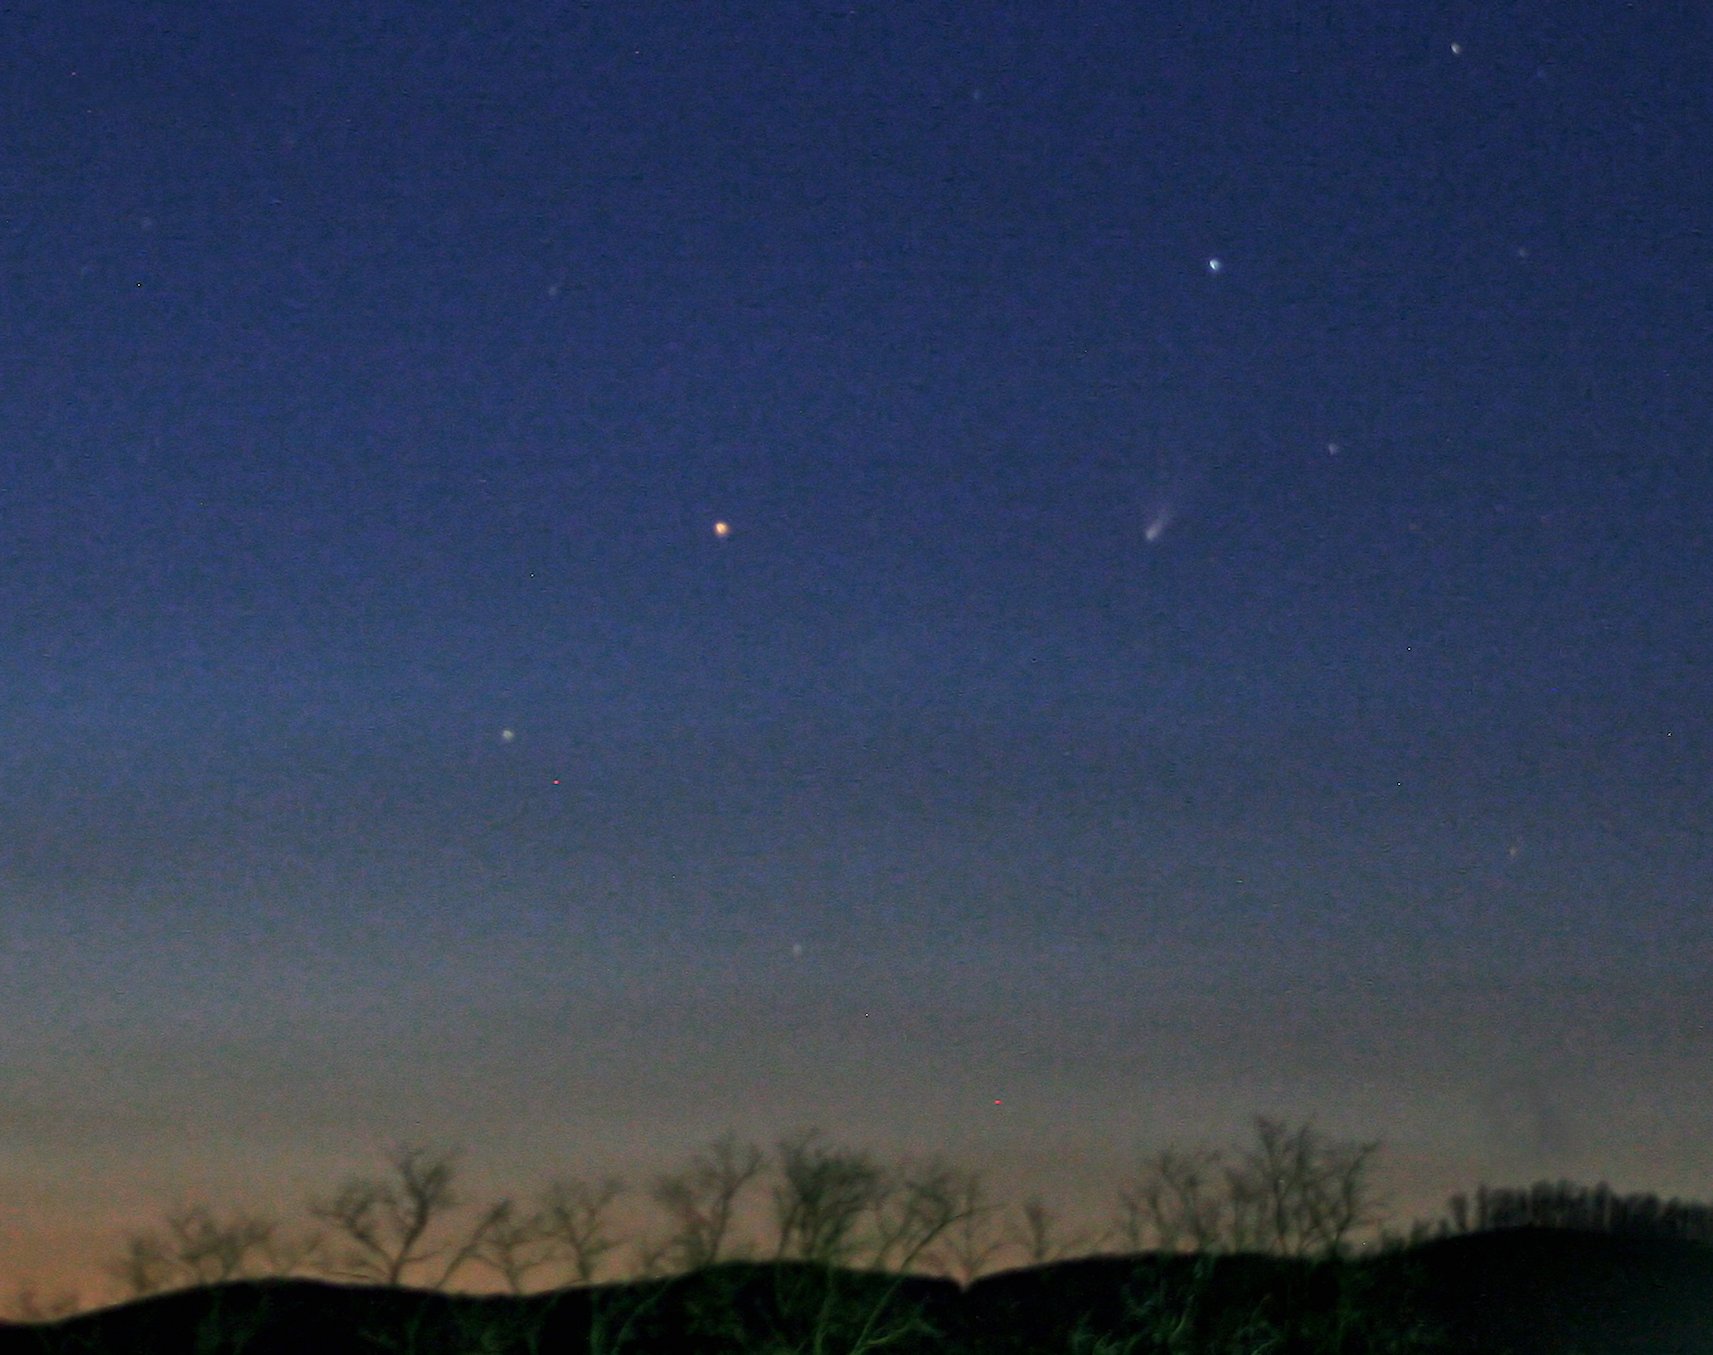 Comet PanSTARRS (C/2011 L4) 3/28/13, 8:50, ISO 800 8 sec